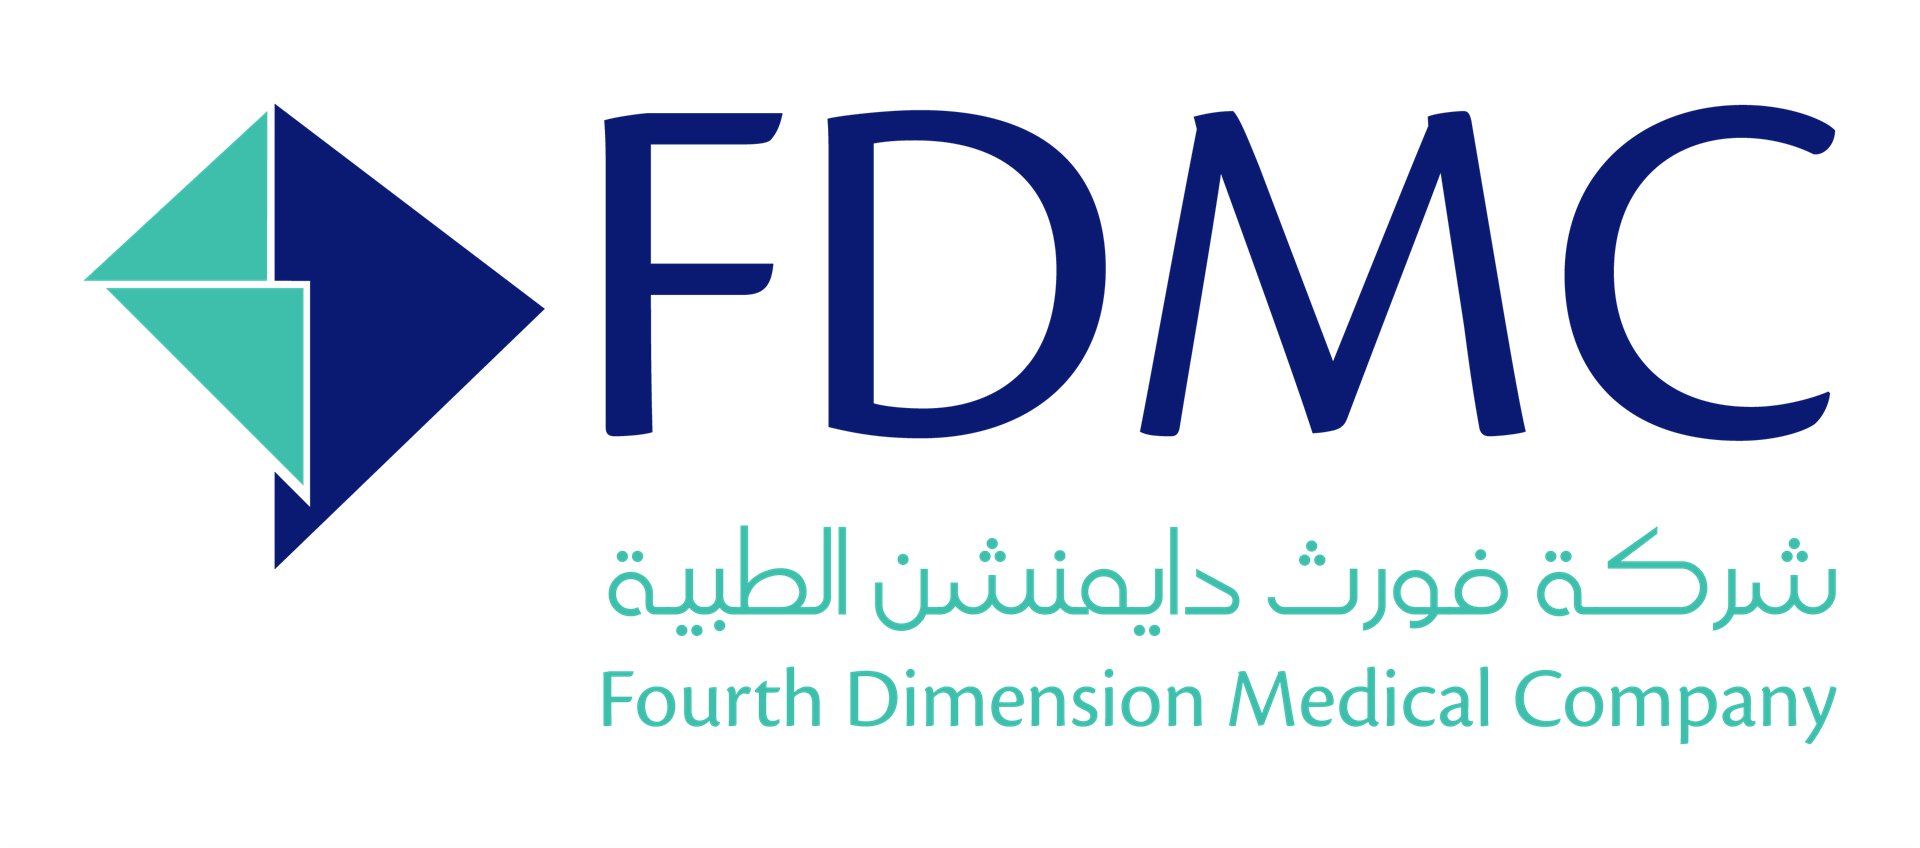 Fourth Dimension Medical Company